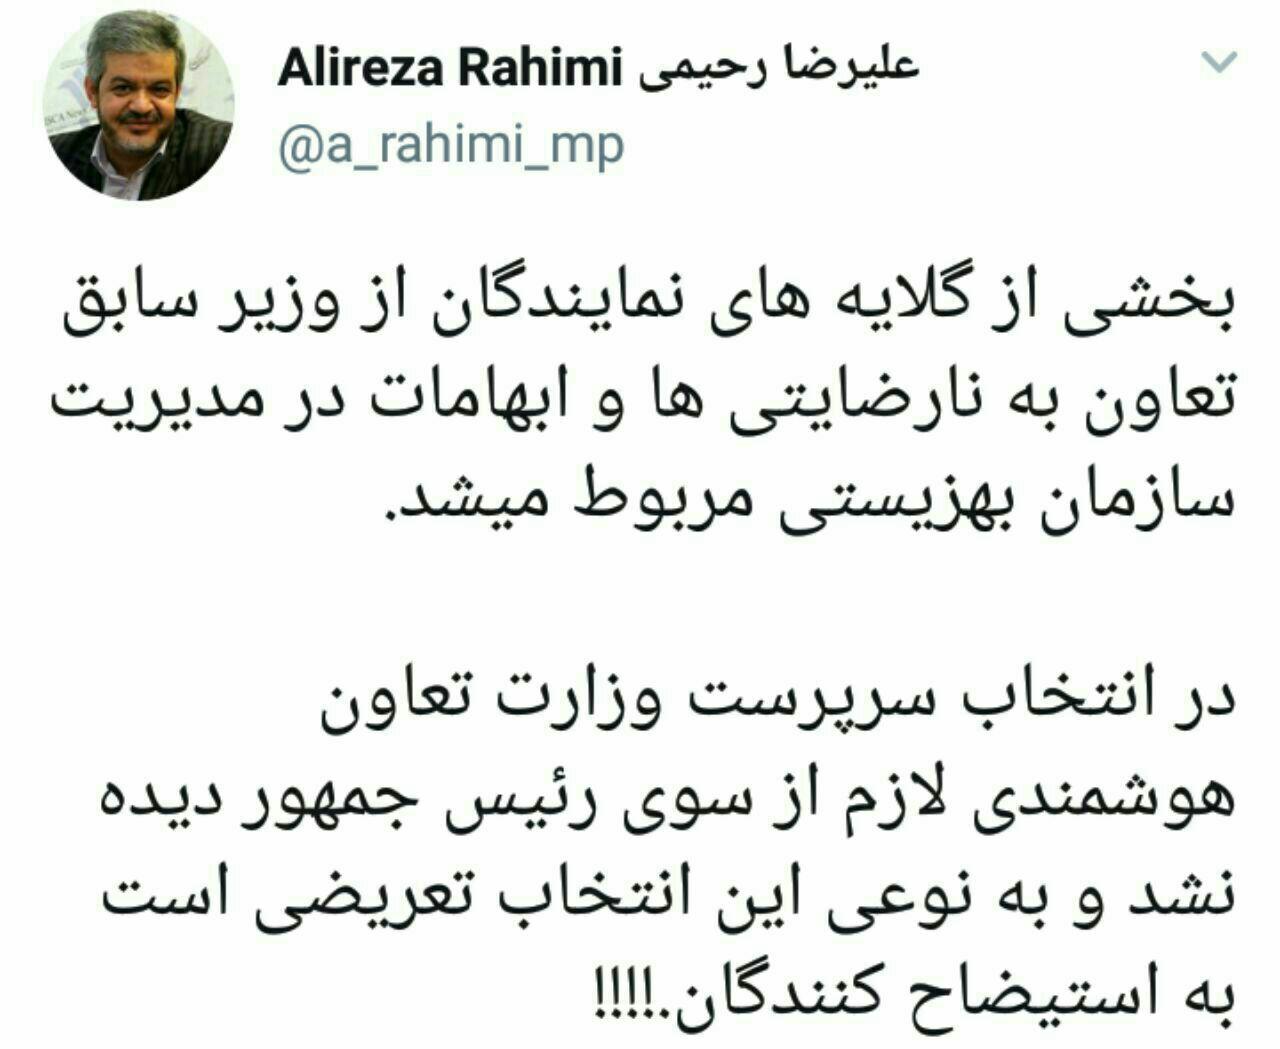 علیرضارحیمی: روحانی با انتخاب سرپرست جدید وزارت کار، اعتراض خود را به استیضاح کنندگان نشان داد